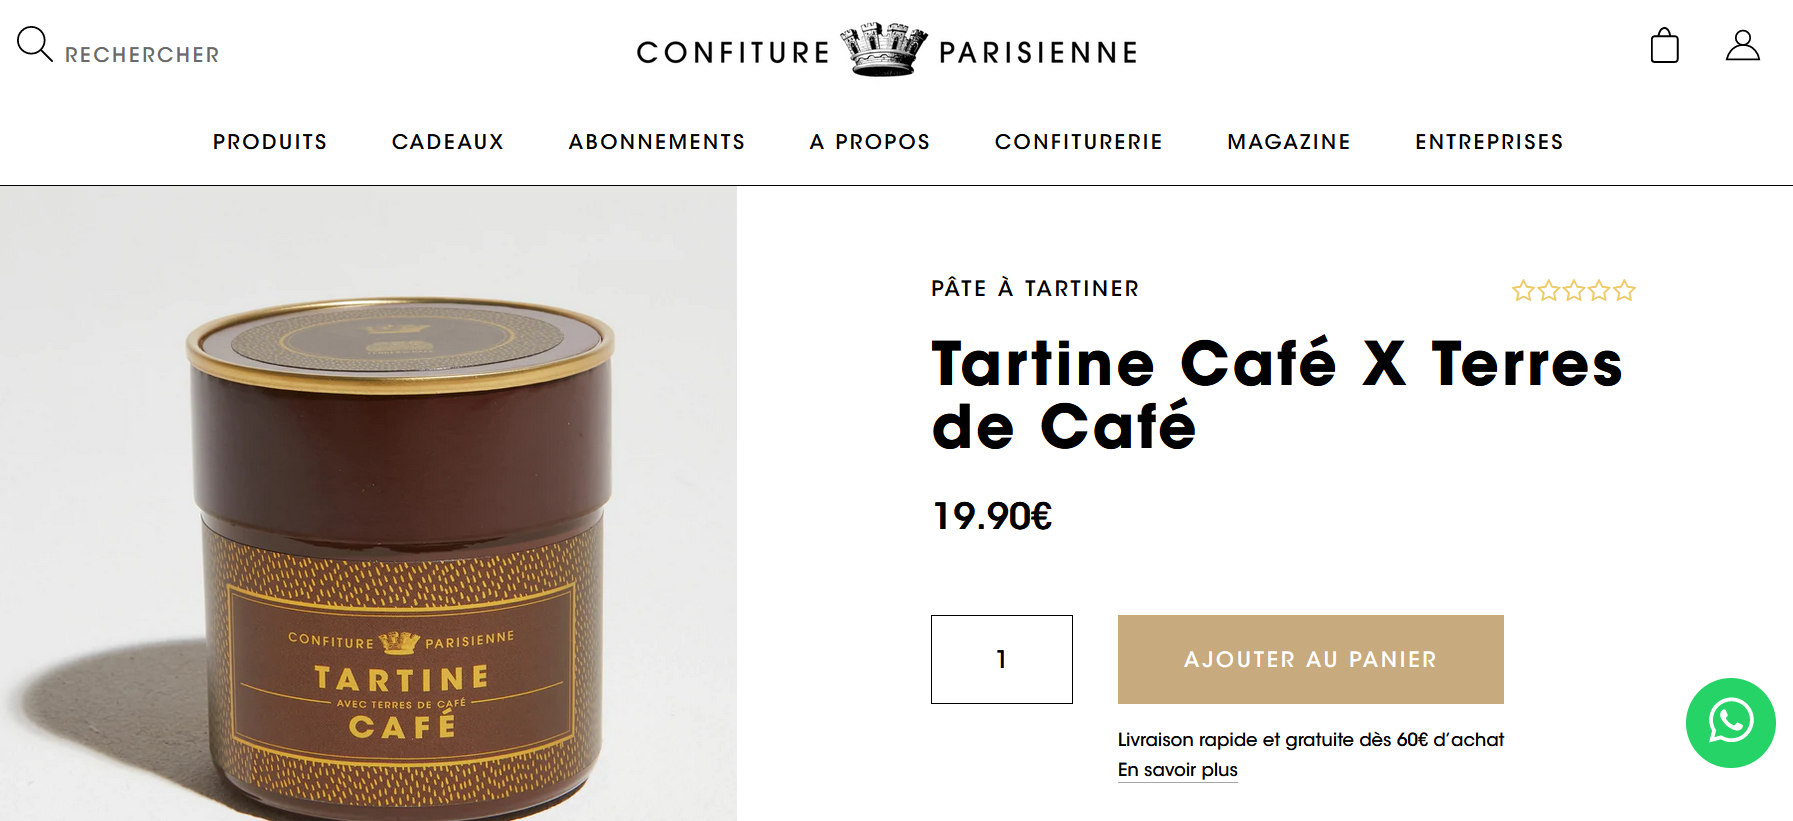 collaboration Confiture Parisienne et Terres de Café